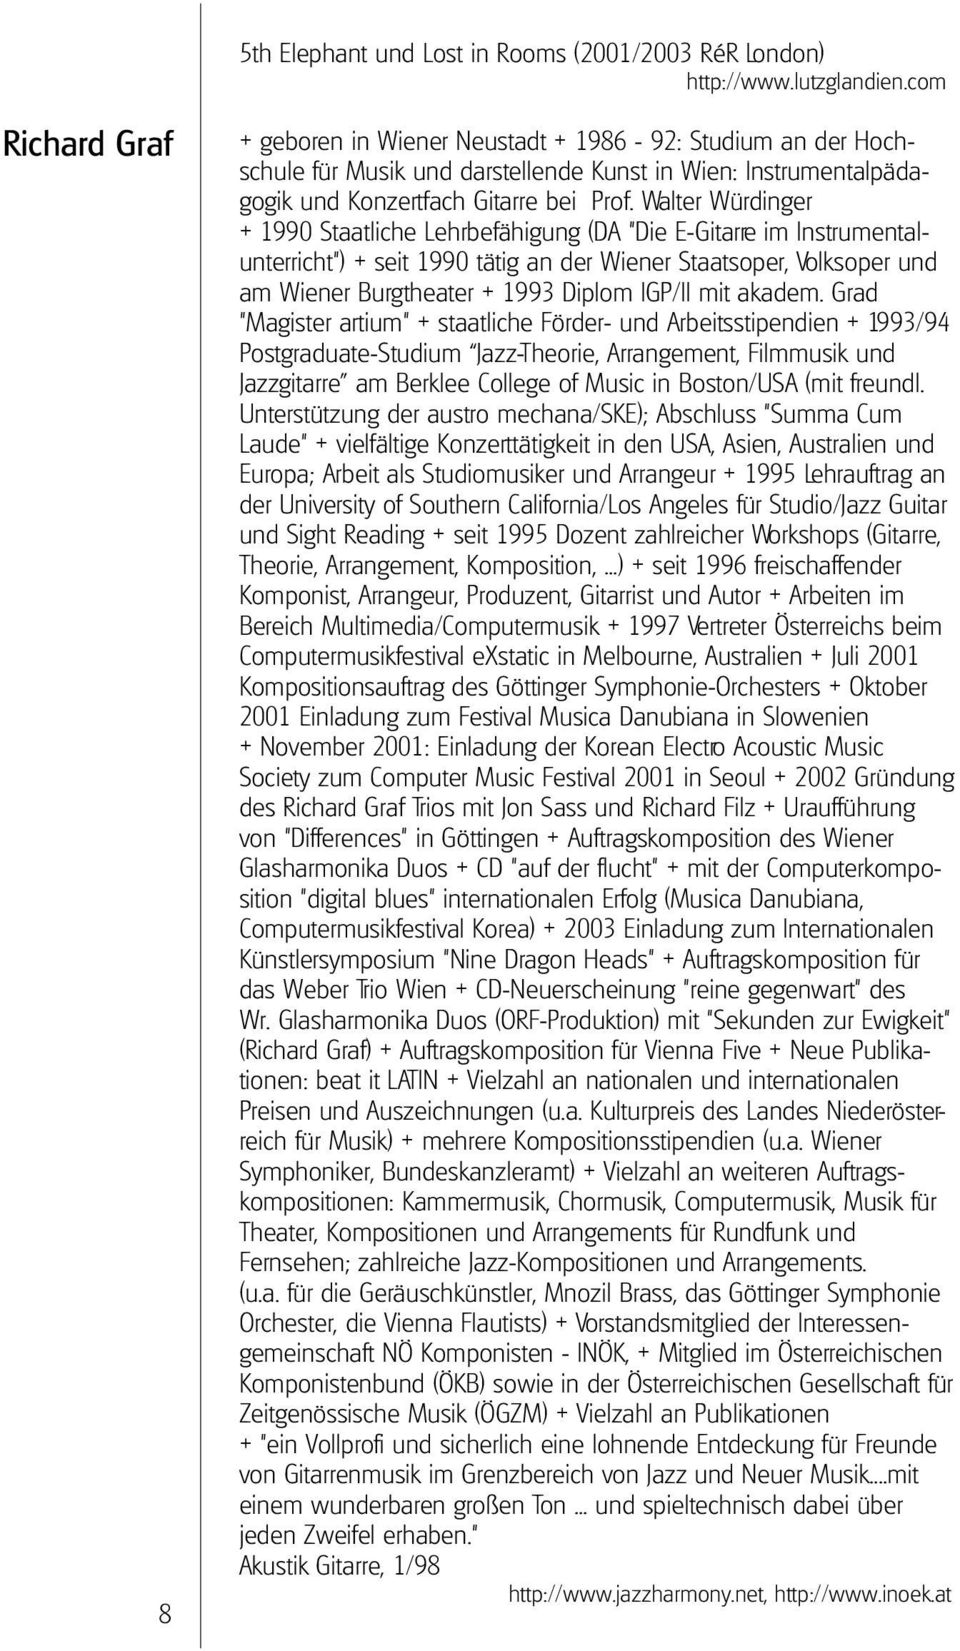 Walter Würdinger + 1990 Staatliche Lehrbefähigung (DA "Die E-Gitarre im Instrumentalunterricht") + seit 1990 tätig an der Wiener Staatsoper, Volksoper und am Wiener Burgtheater + 1993 Diplom IGP/II